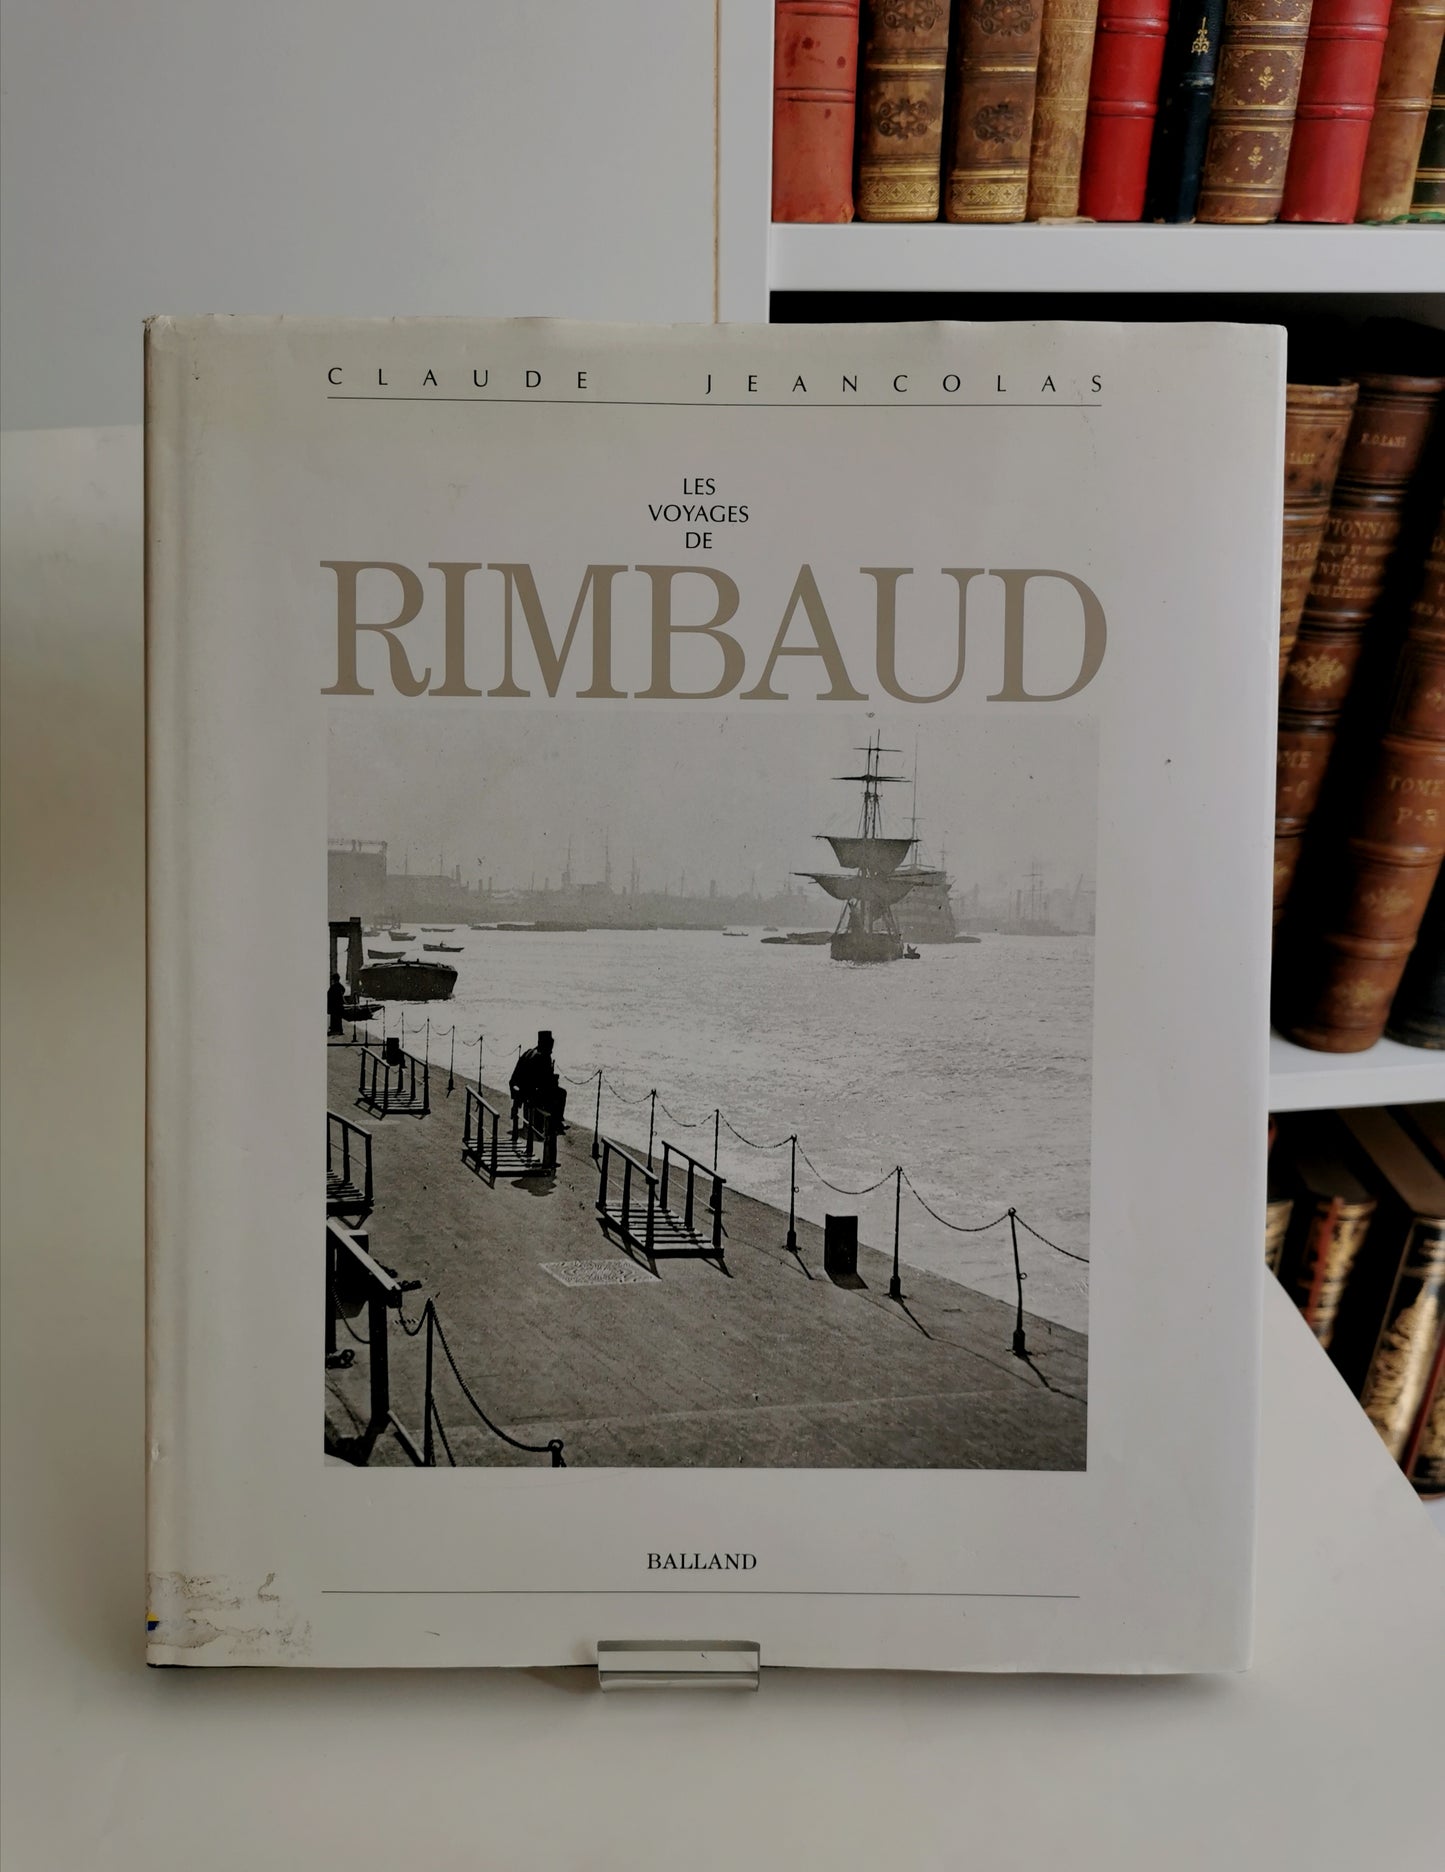 Les voyages de Rimbaud, Claude Jeancolas, Balland, 1991.